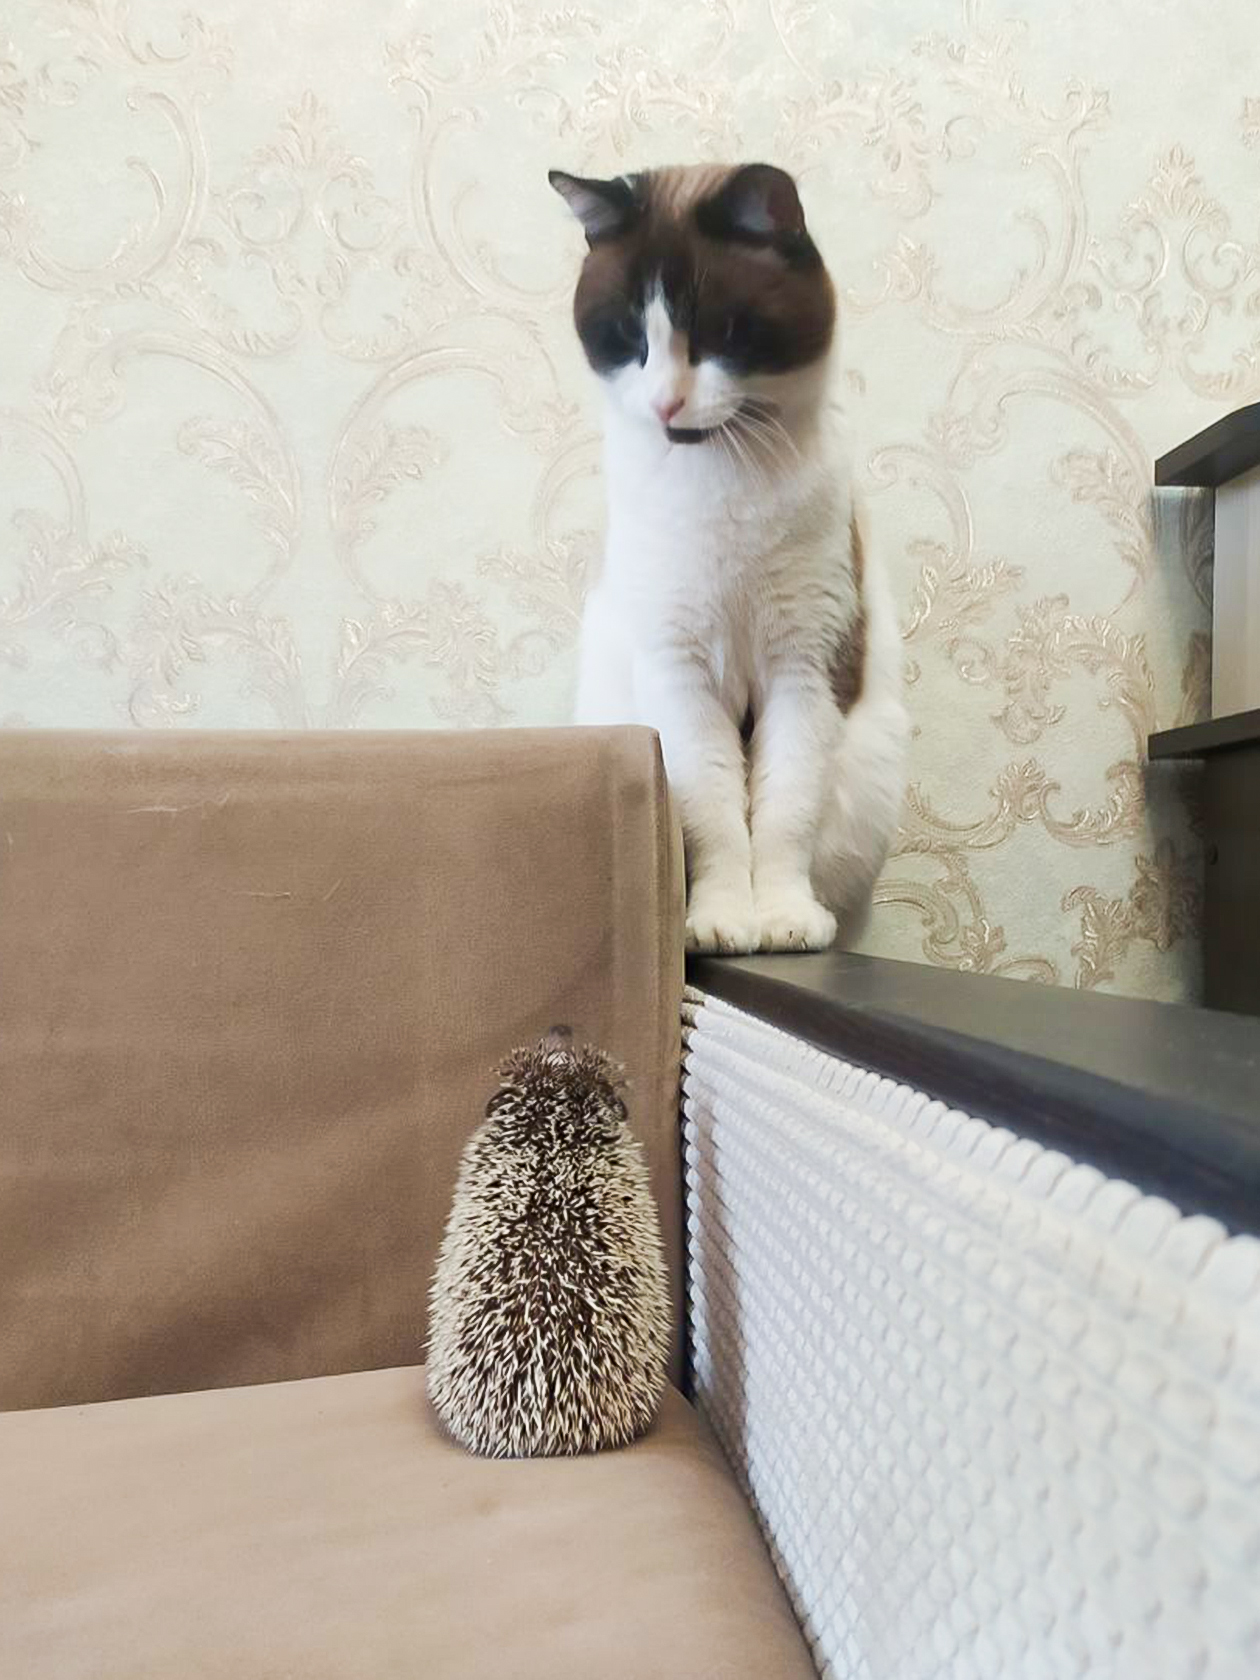 Ежидзе знакомится с котом